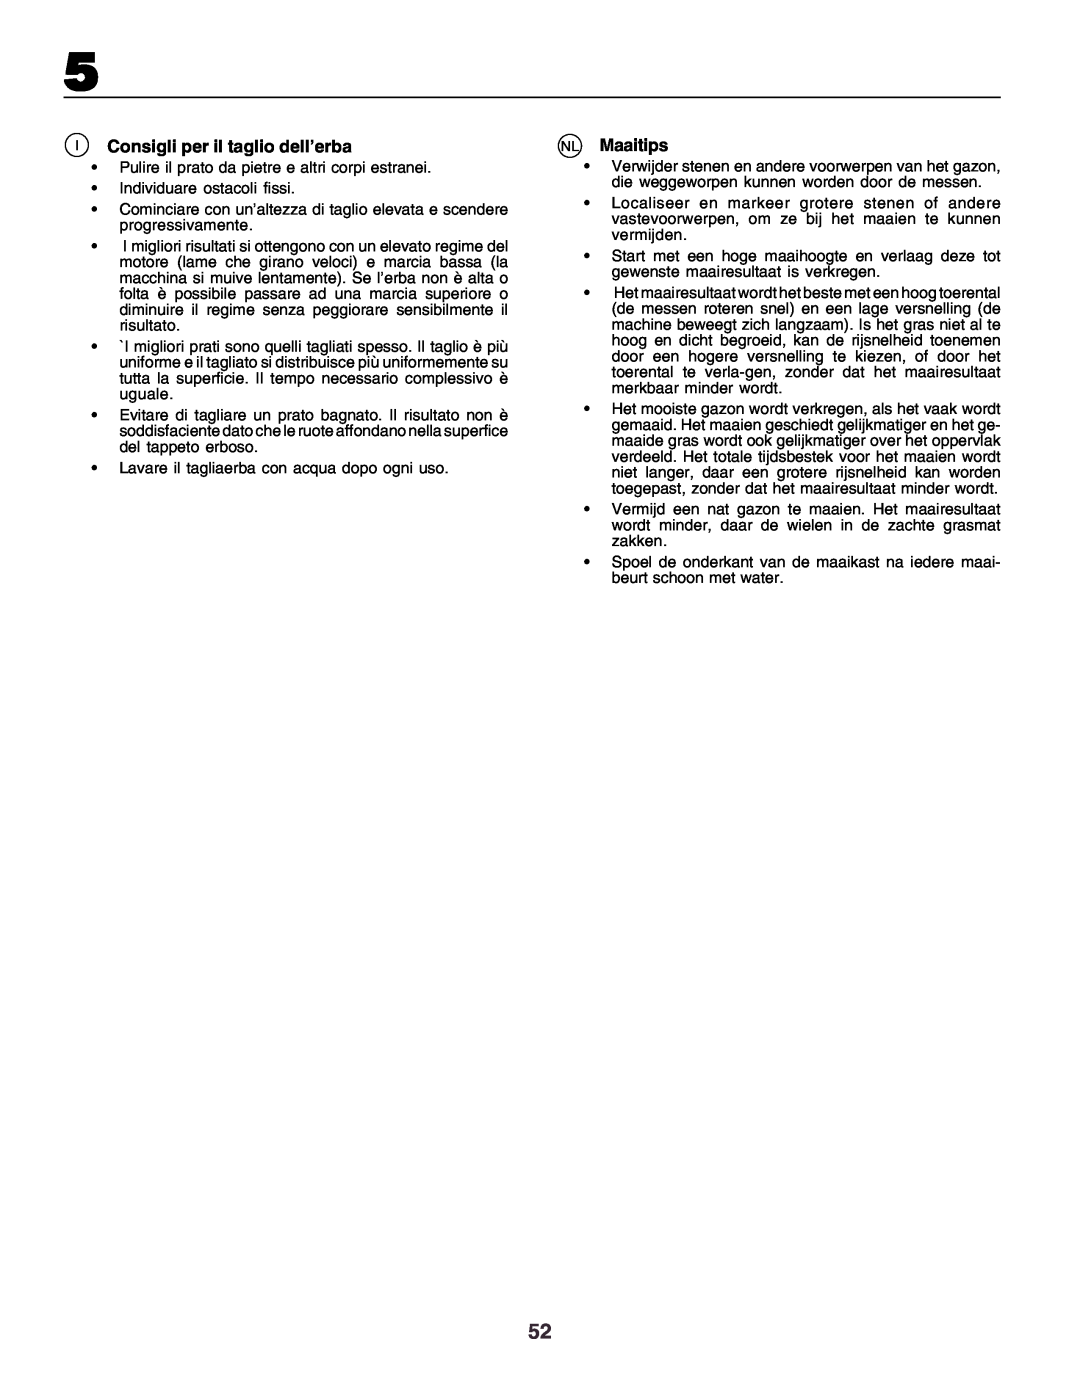 Husqvarna CT160 instruction manual IConsigli per il taglio dell’erba, NL Maaitips 